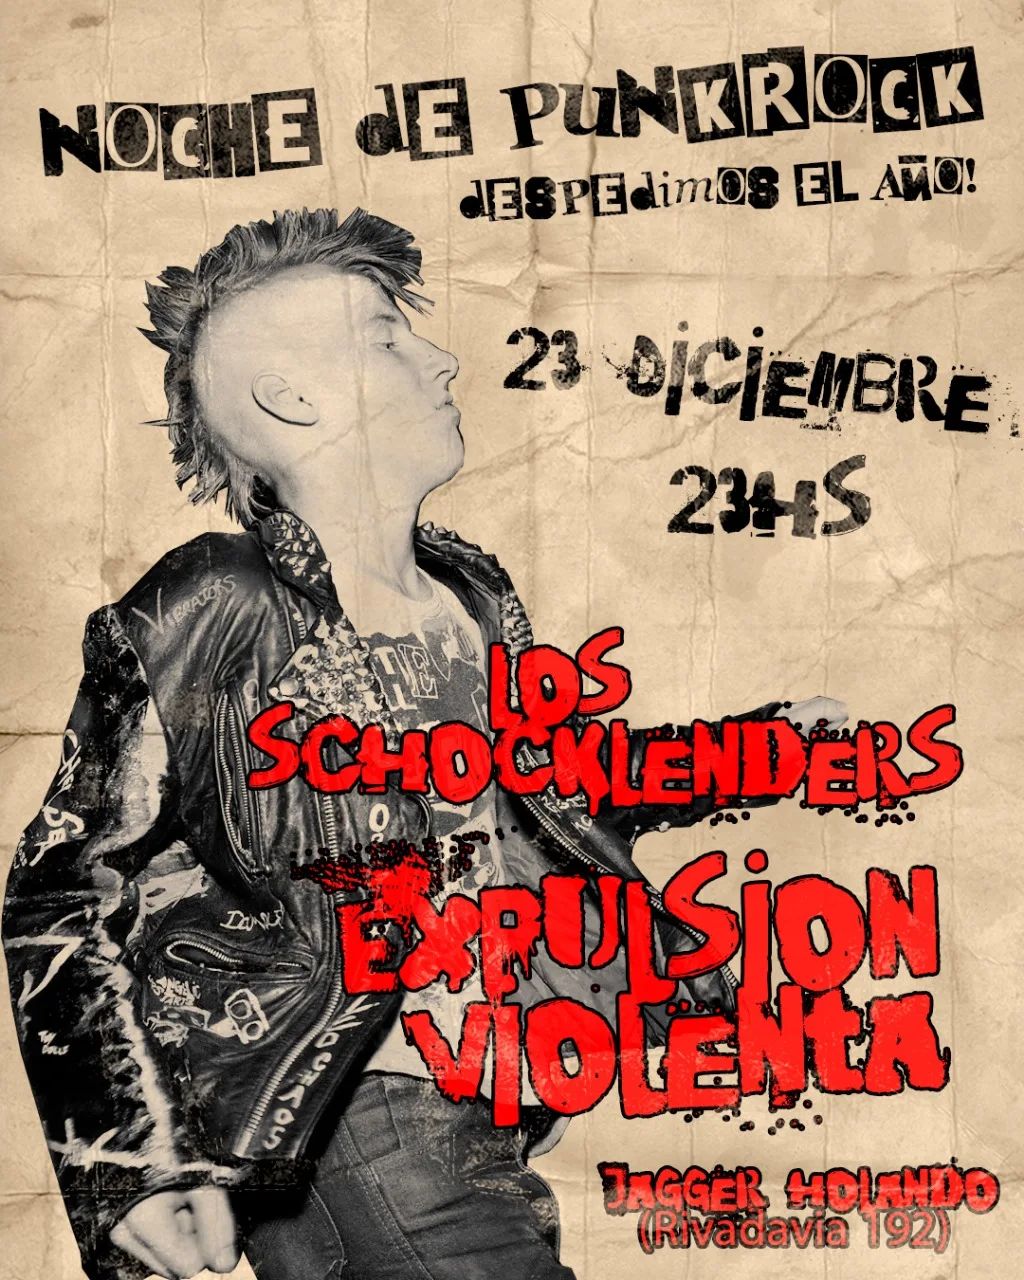 Expulsión violenta - Shoklenders - Cultura para Armar